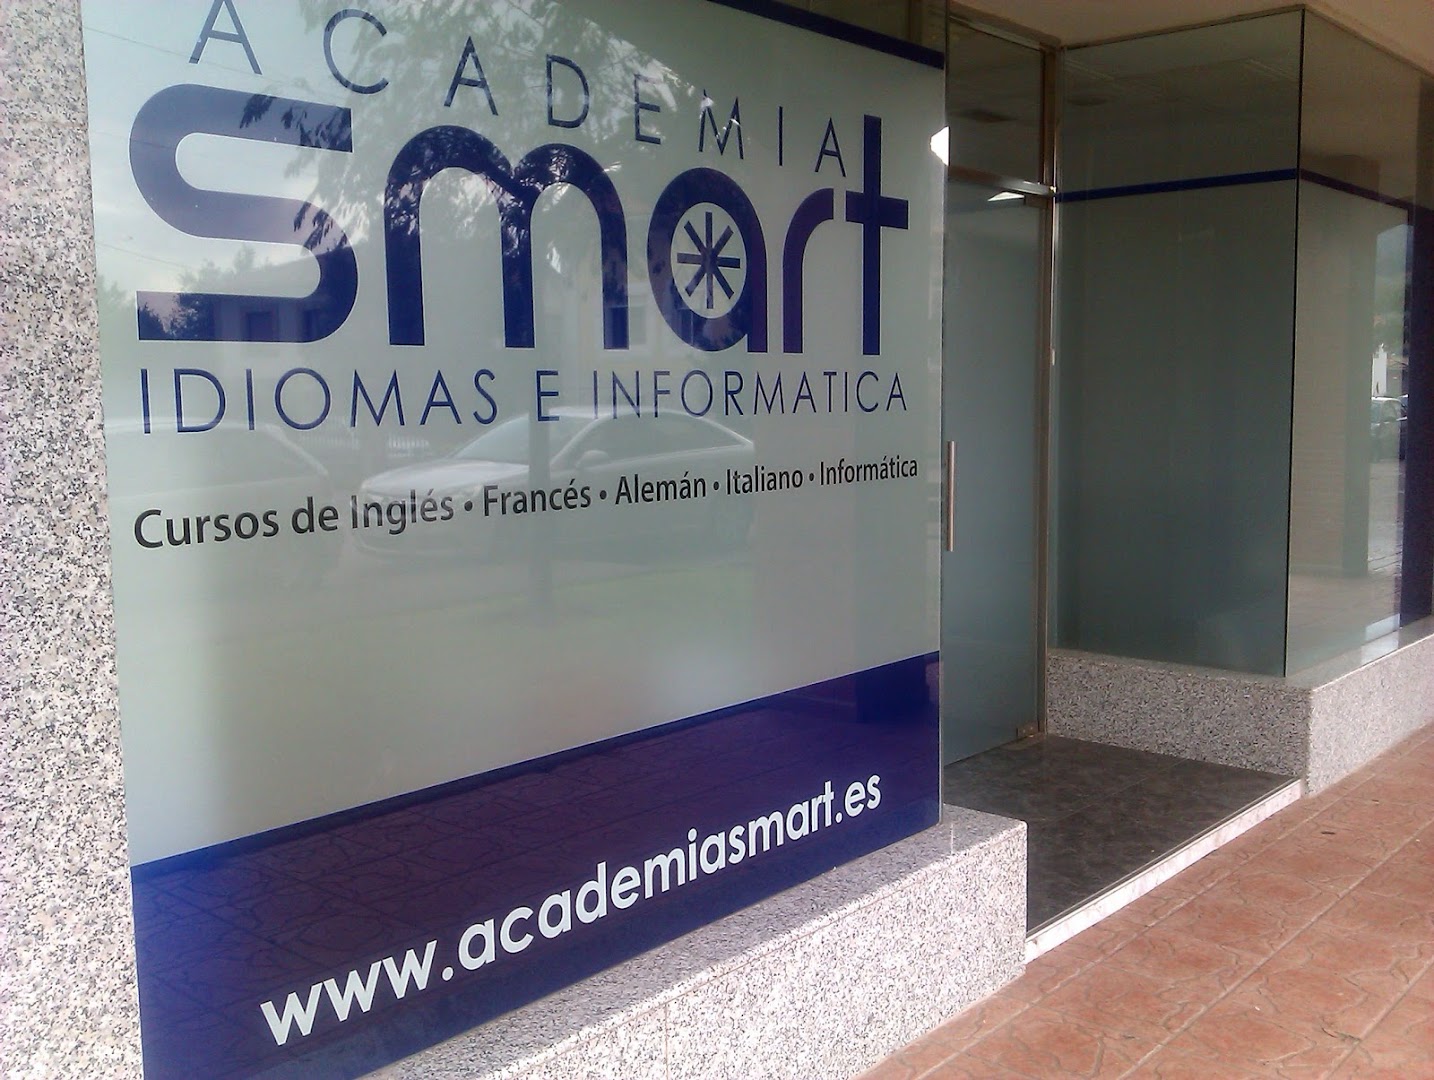 Academia Smart